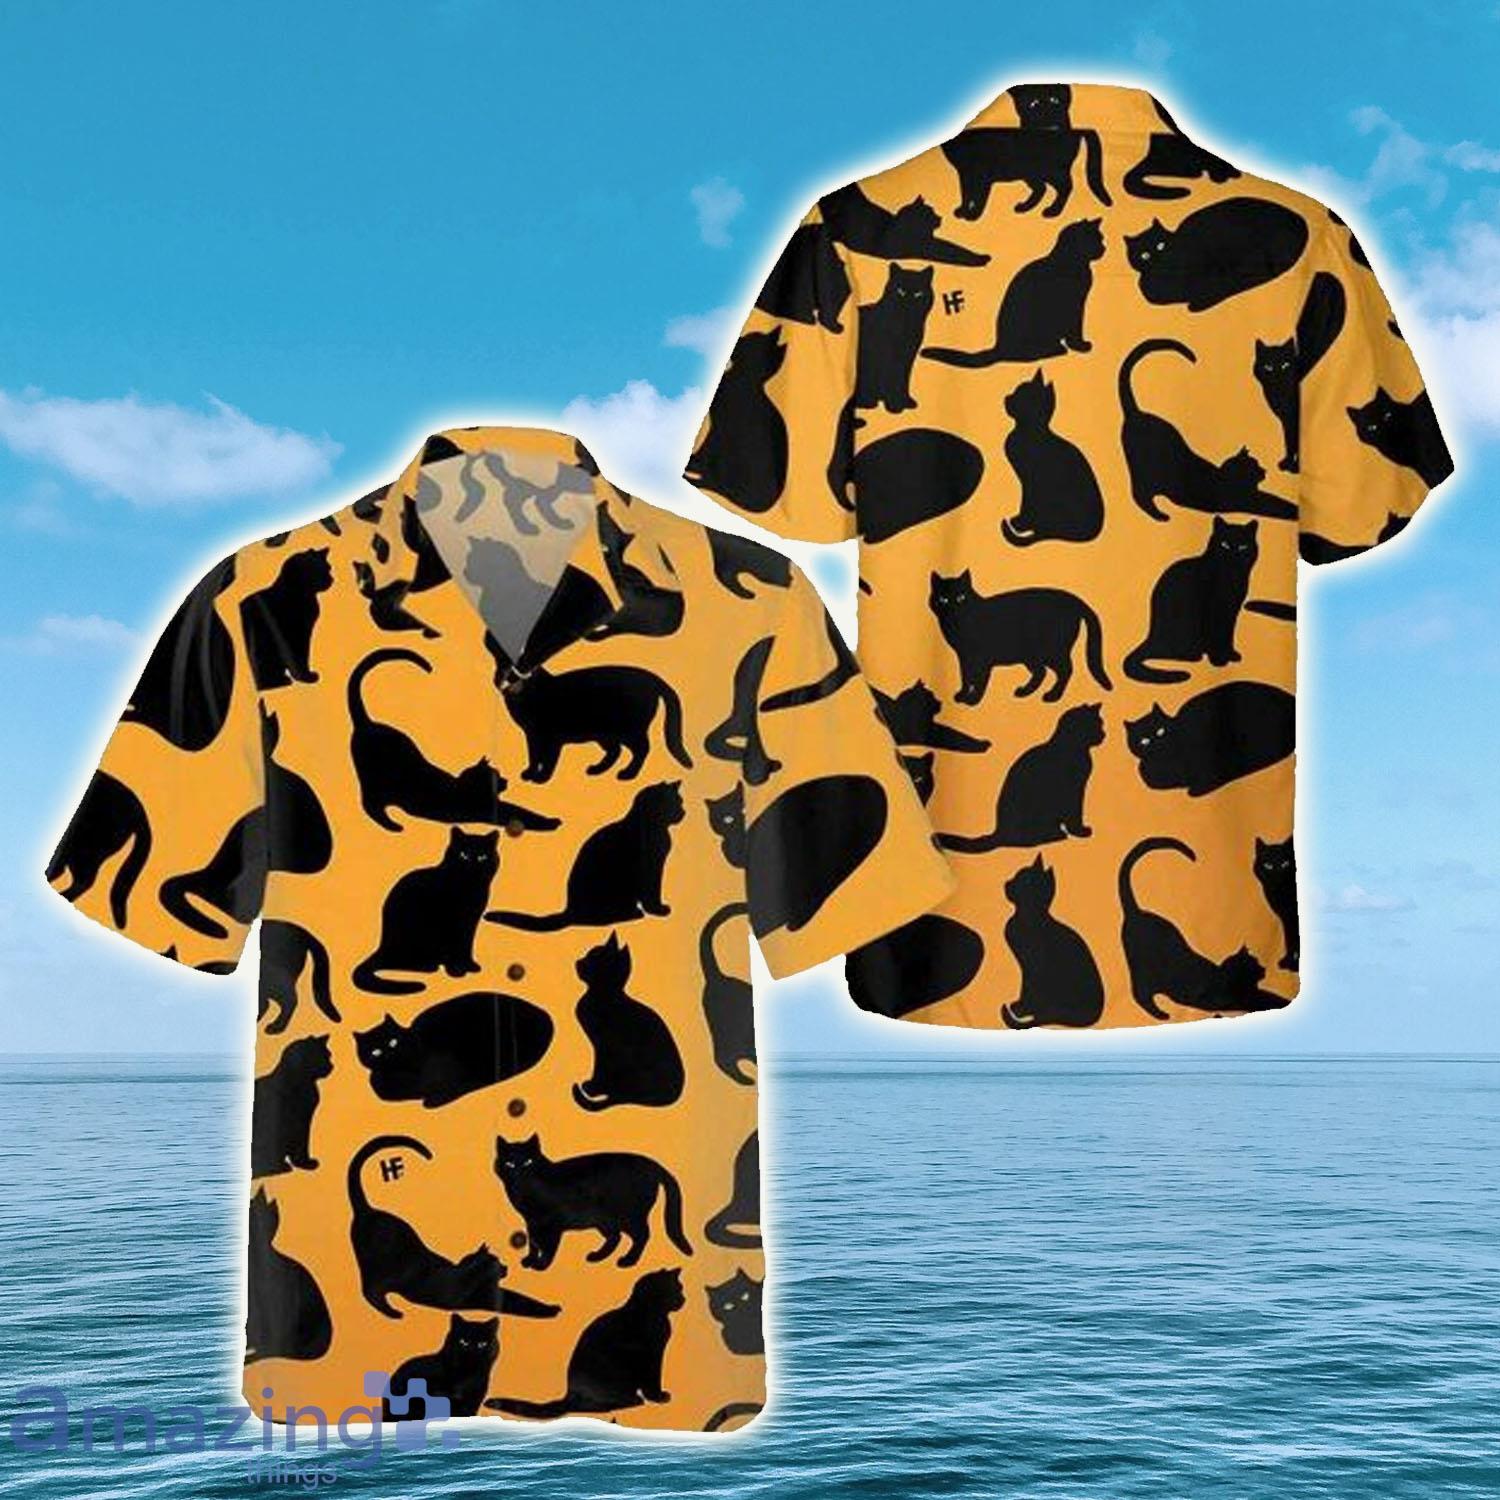 Yoga Cat Summer Vibe Cat Hawaiian Shirt - Yoga Cat Summer Vibe Cat Hawaiian Shirt